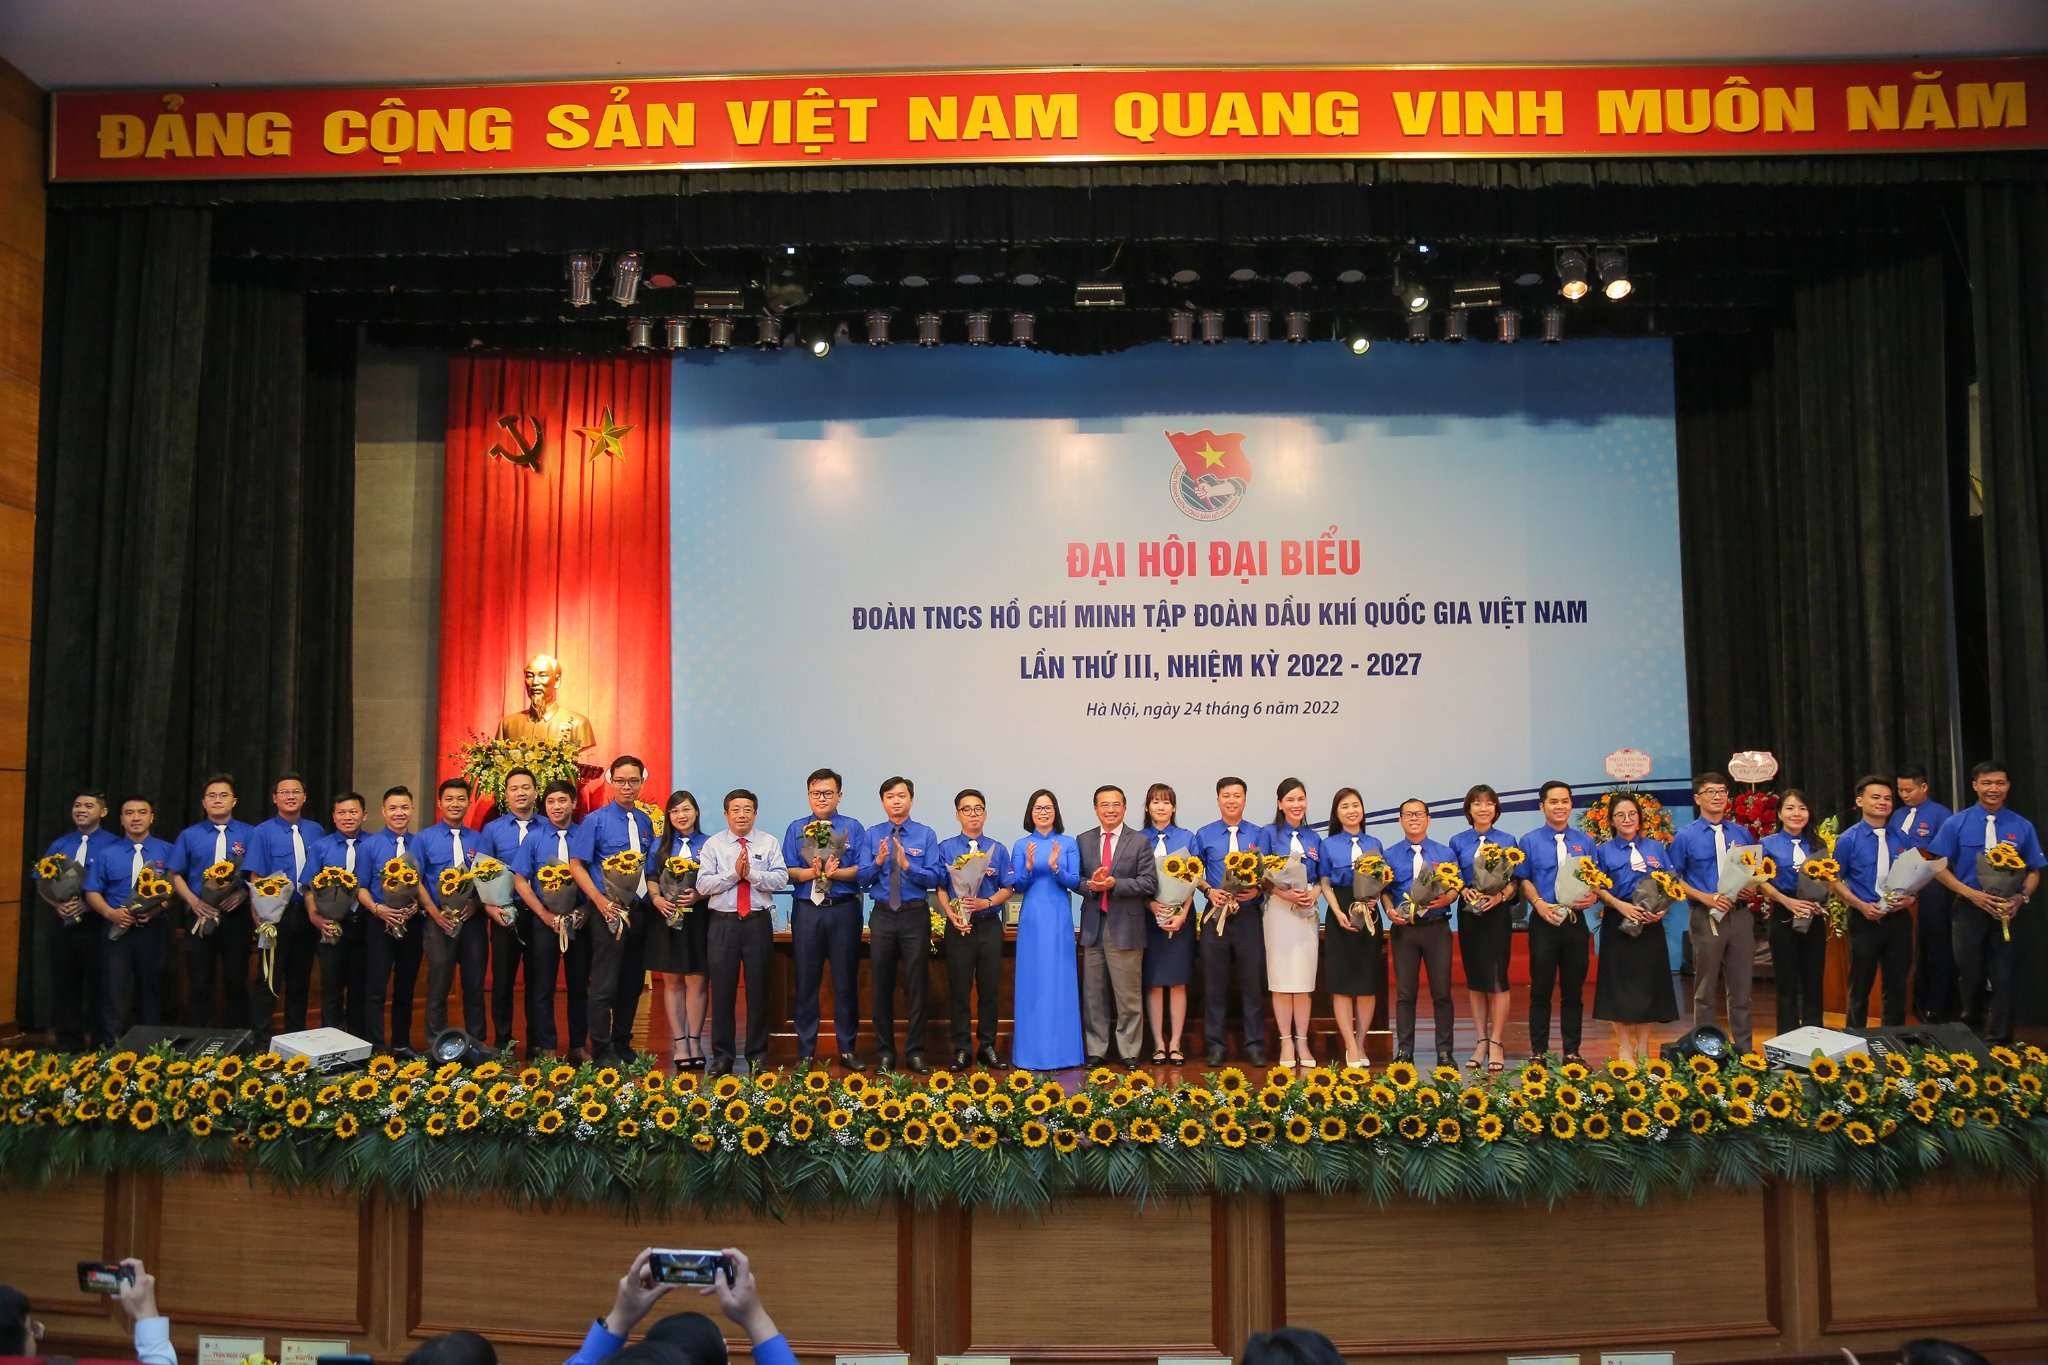 Ra mắt Ban chấp hành Tập đoàn Dầu khí Quốc gia Việt Nam